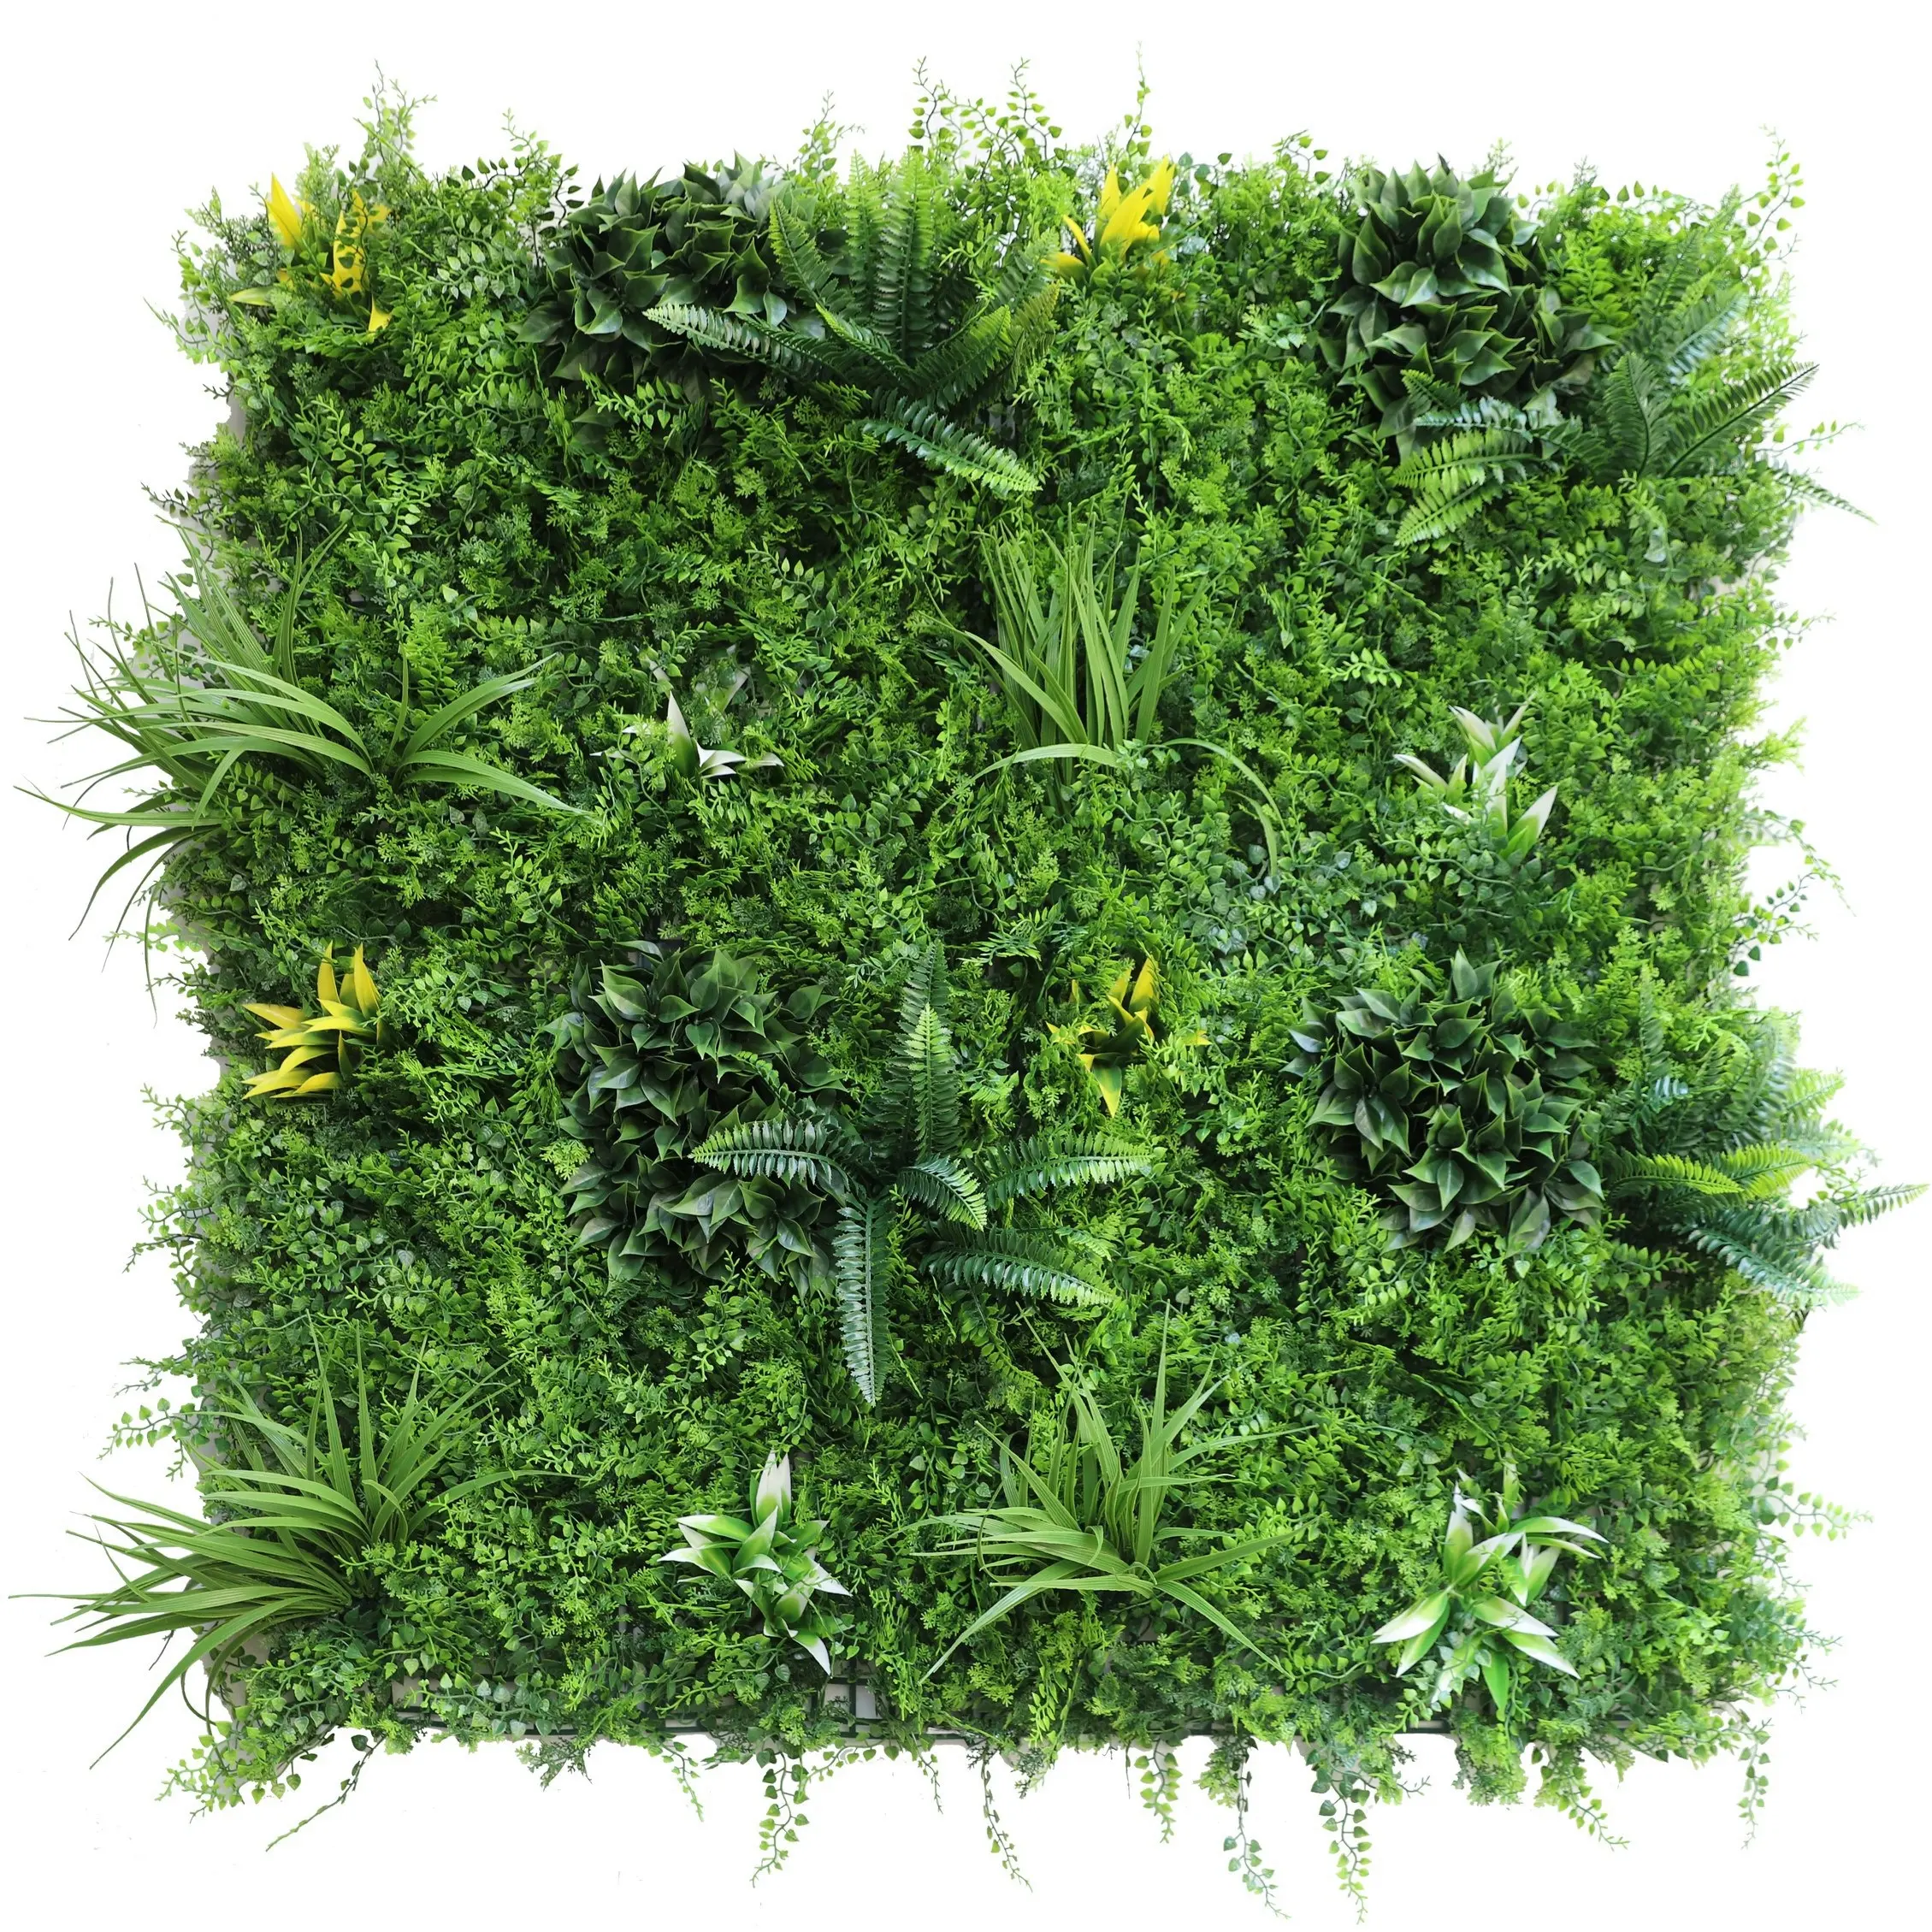 Plantes artificielles chauffage vertical, mur de plantes pour l'intérieur et l'extérieur, offre spéciale